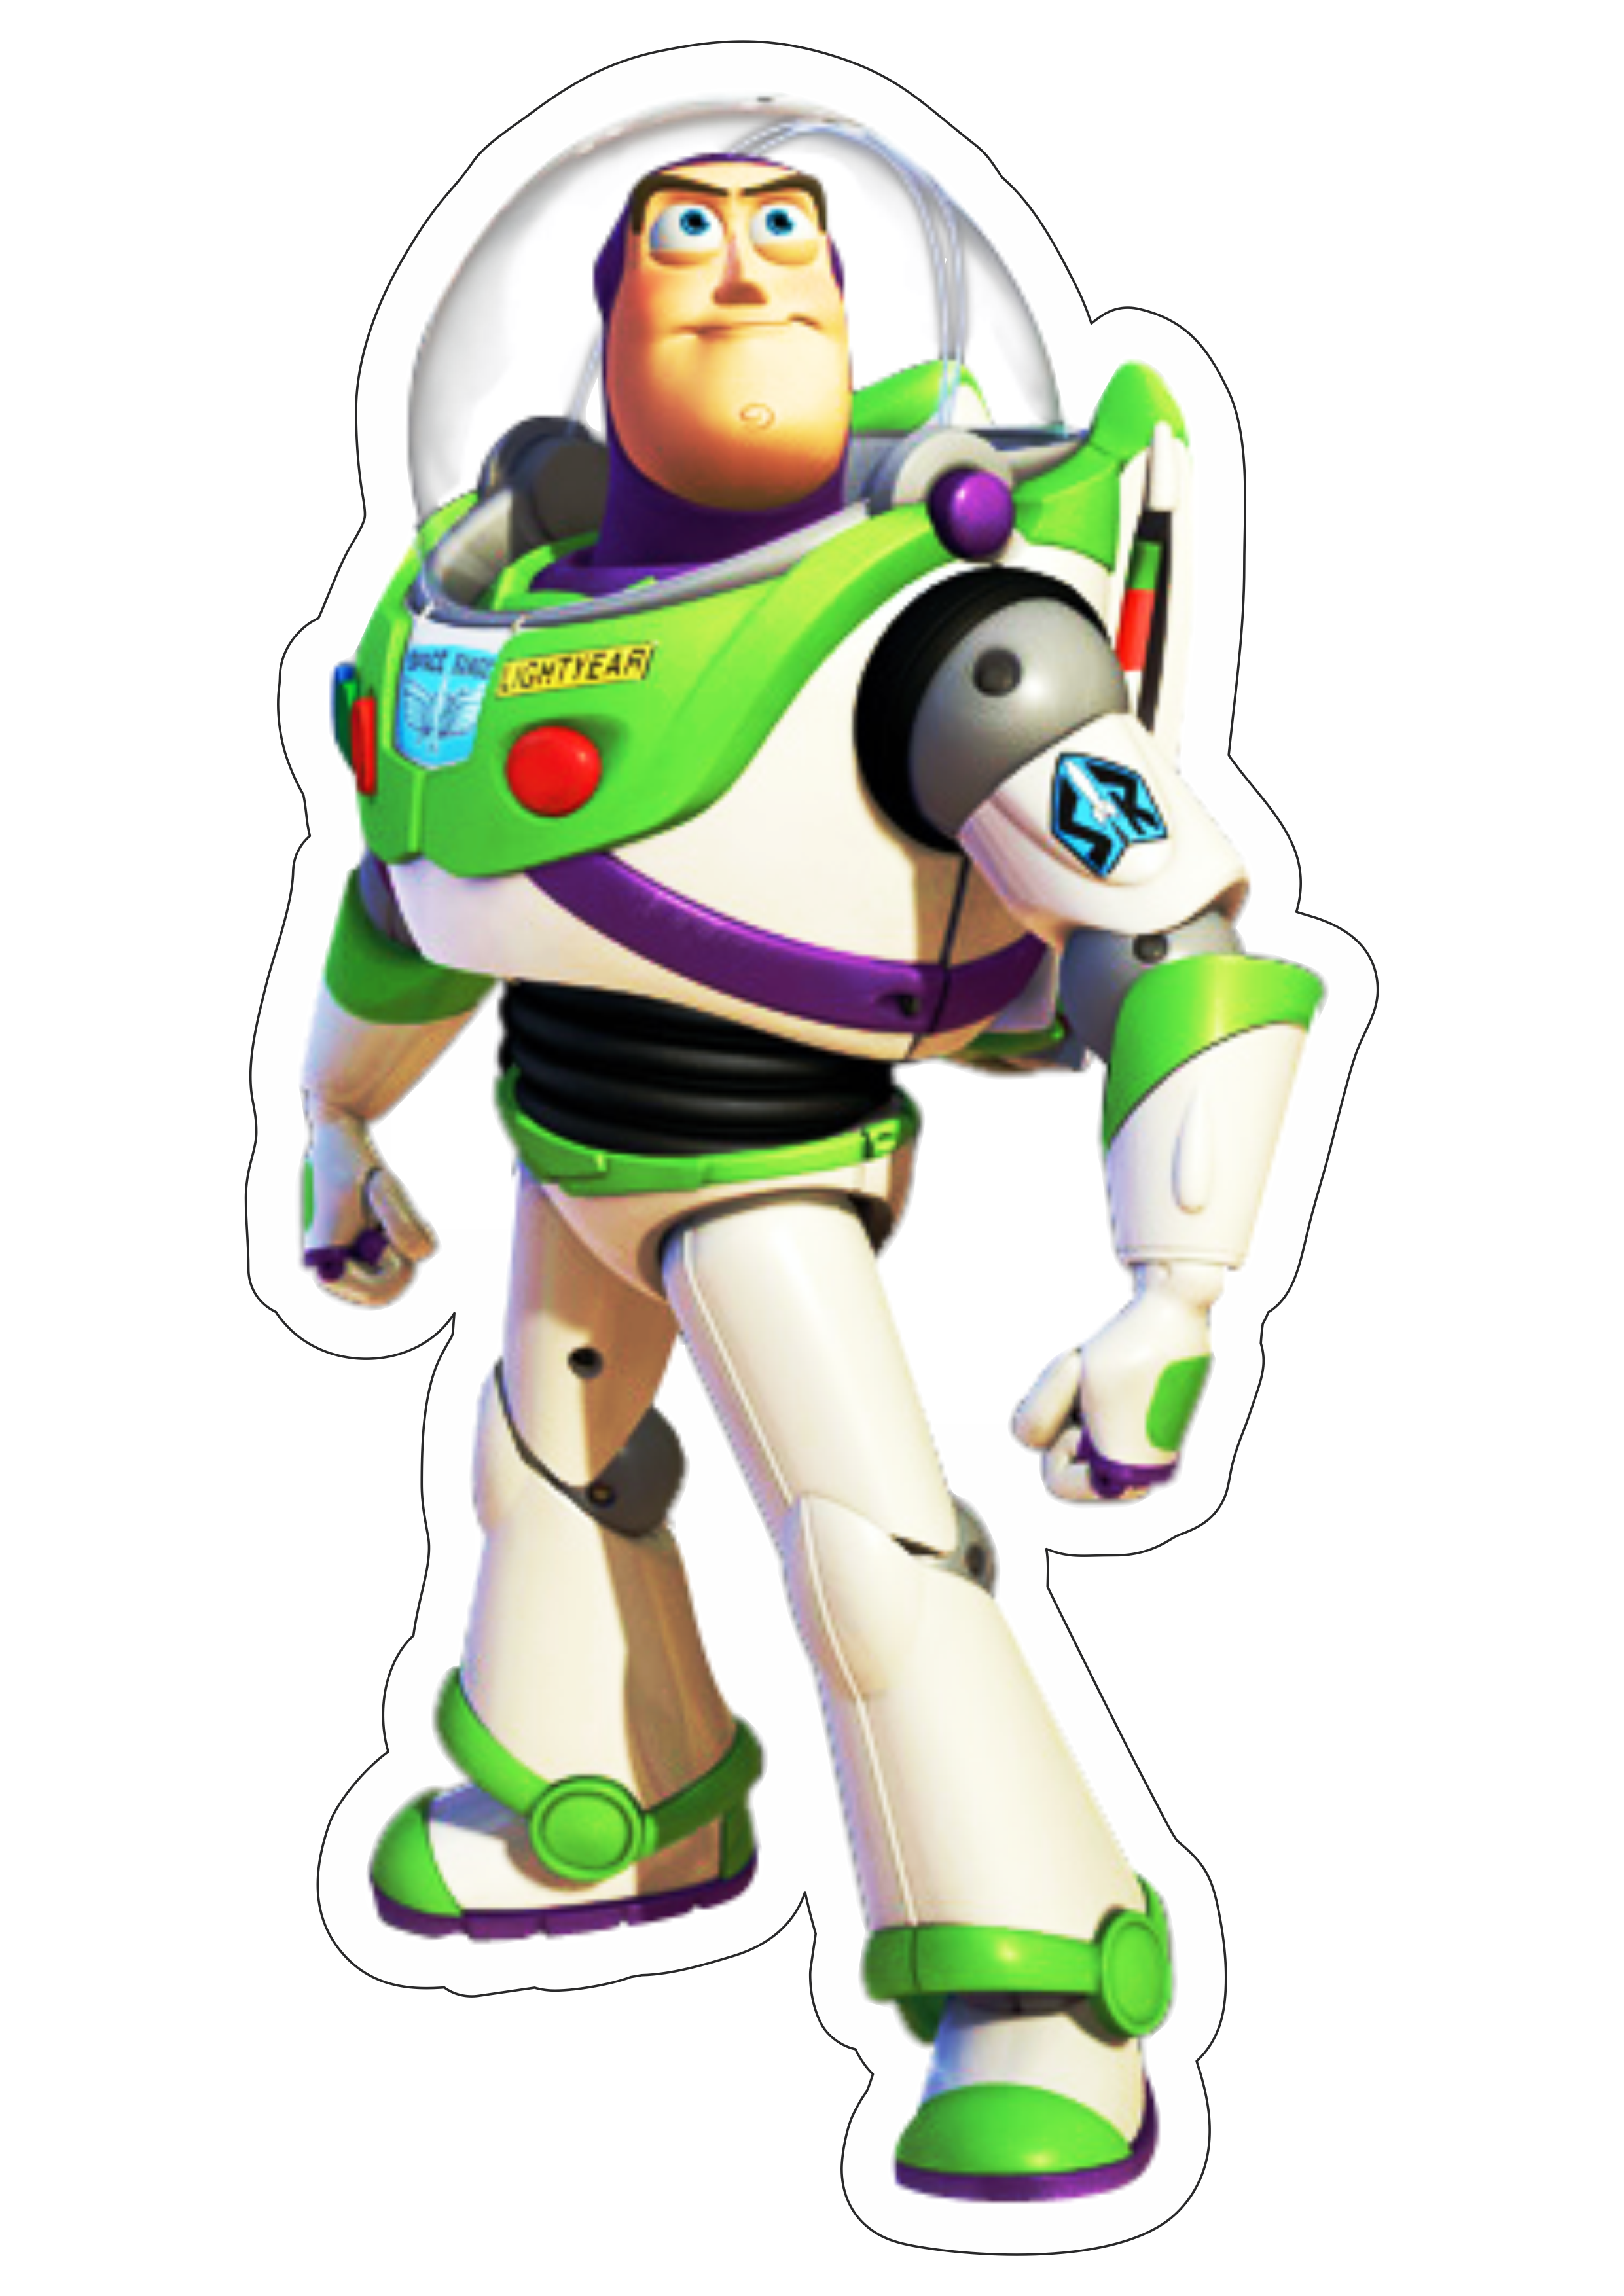 Toy Story Buzz Lightyear brinquedo astronauta disney plus streaming fundo transparente com contorno png